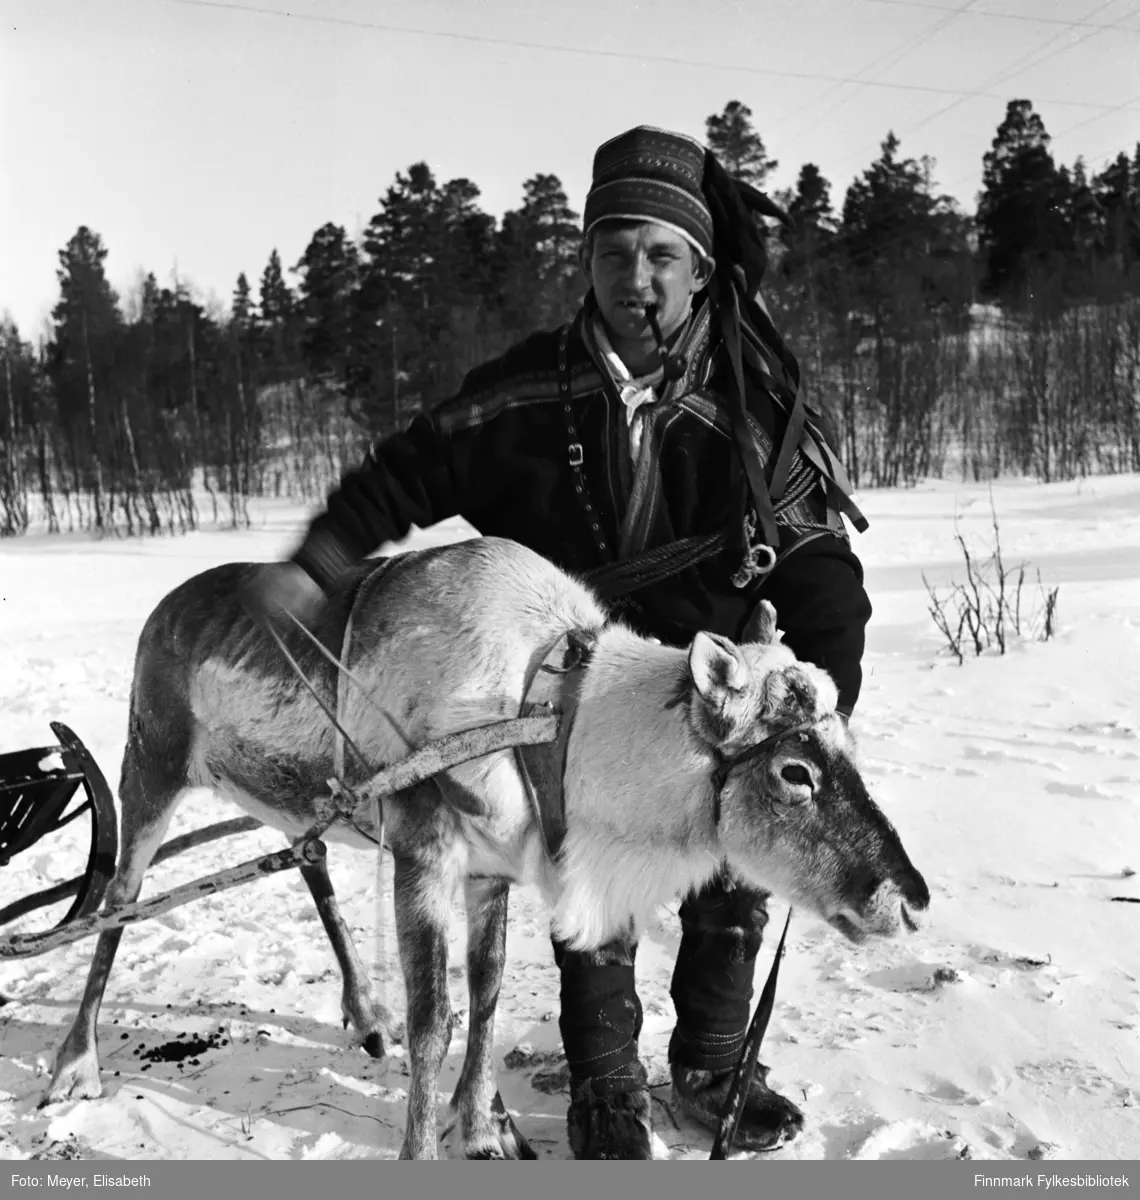 Johan Klemetsen Hætta fotografert mens han jobber med en av kjørereinene. Muligens fotografert i området rundt Gargia fjellstue.